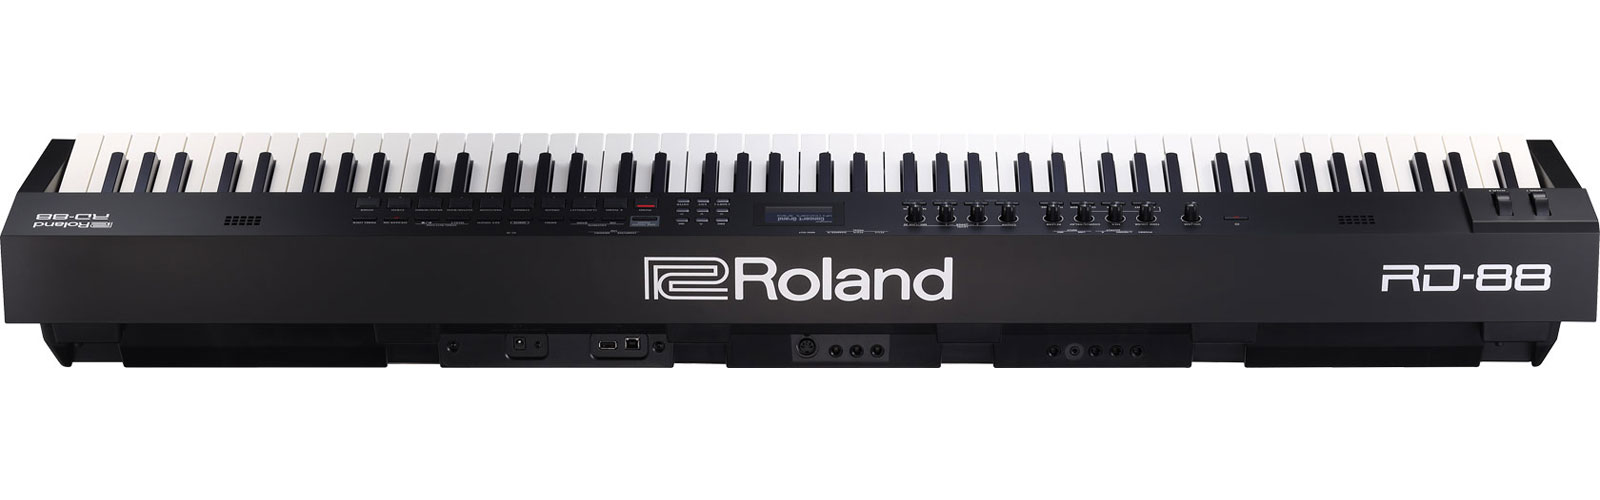 Roland Rd-88 - Teclado de escenario - Variation 4